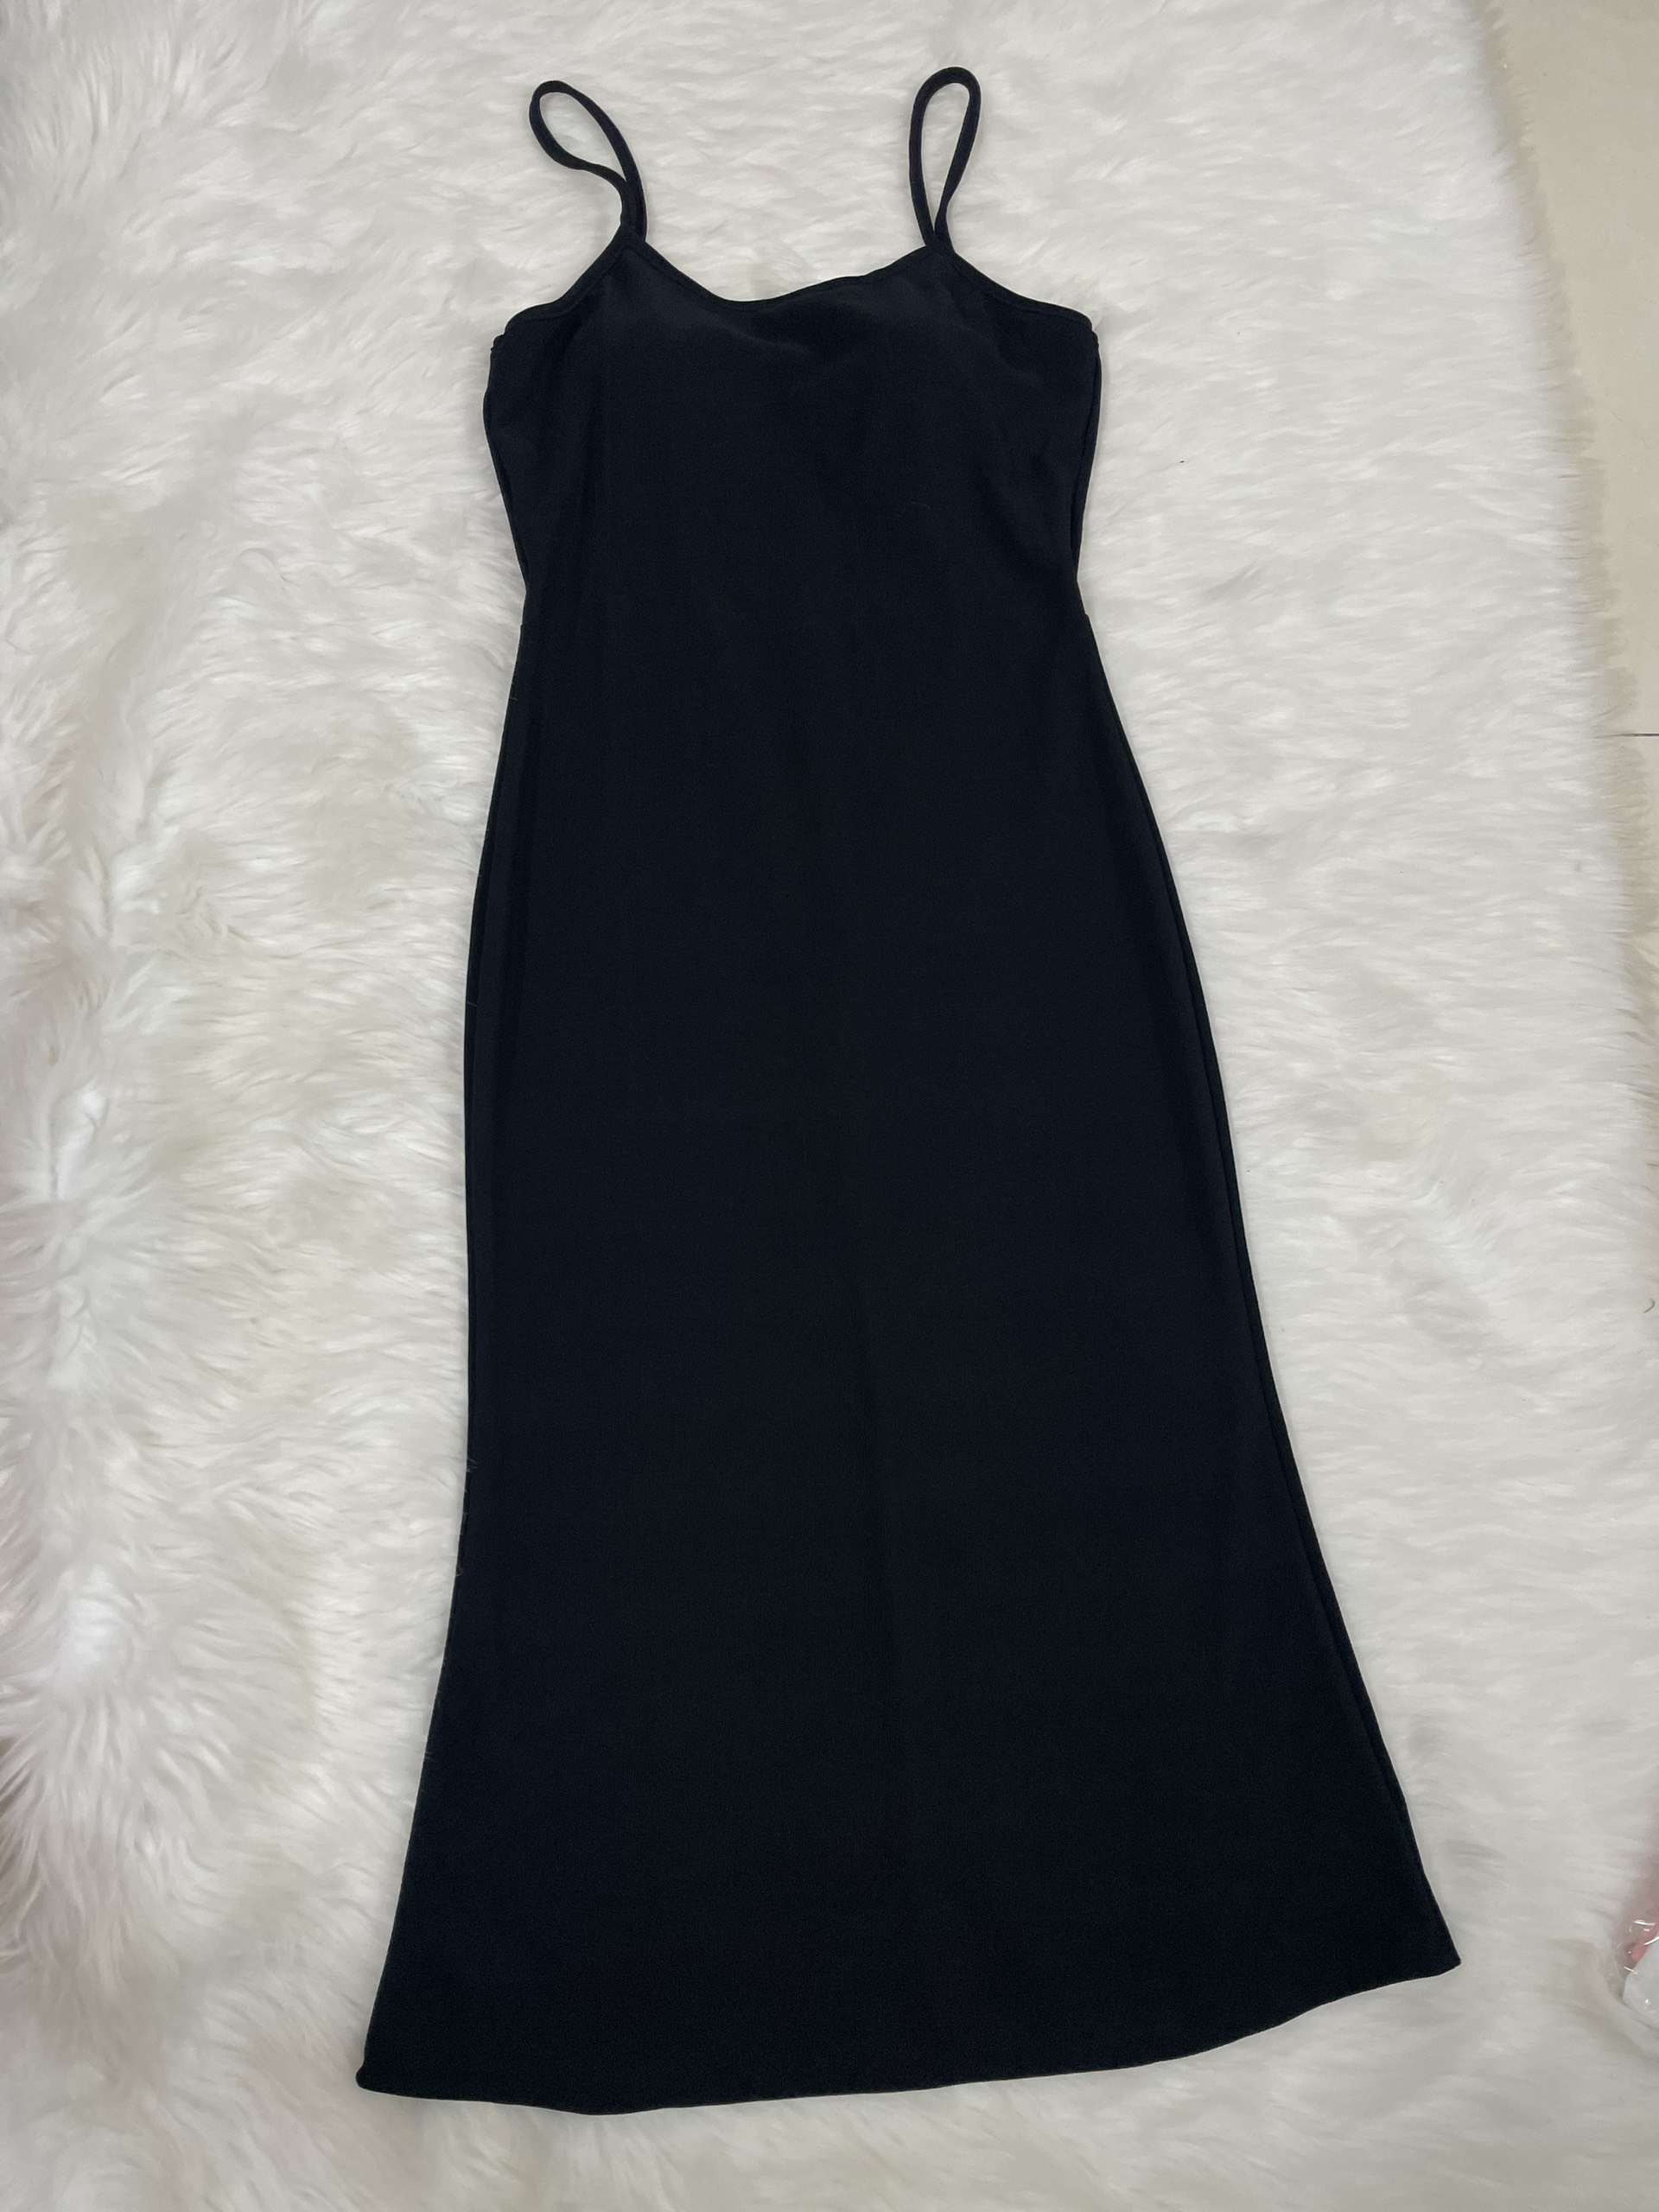 Đầm body thun gân kèm áo khoác kaki Ánh Dương Clothing M204, set váy body nữ và áo khoác